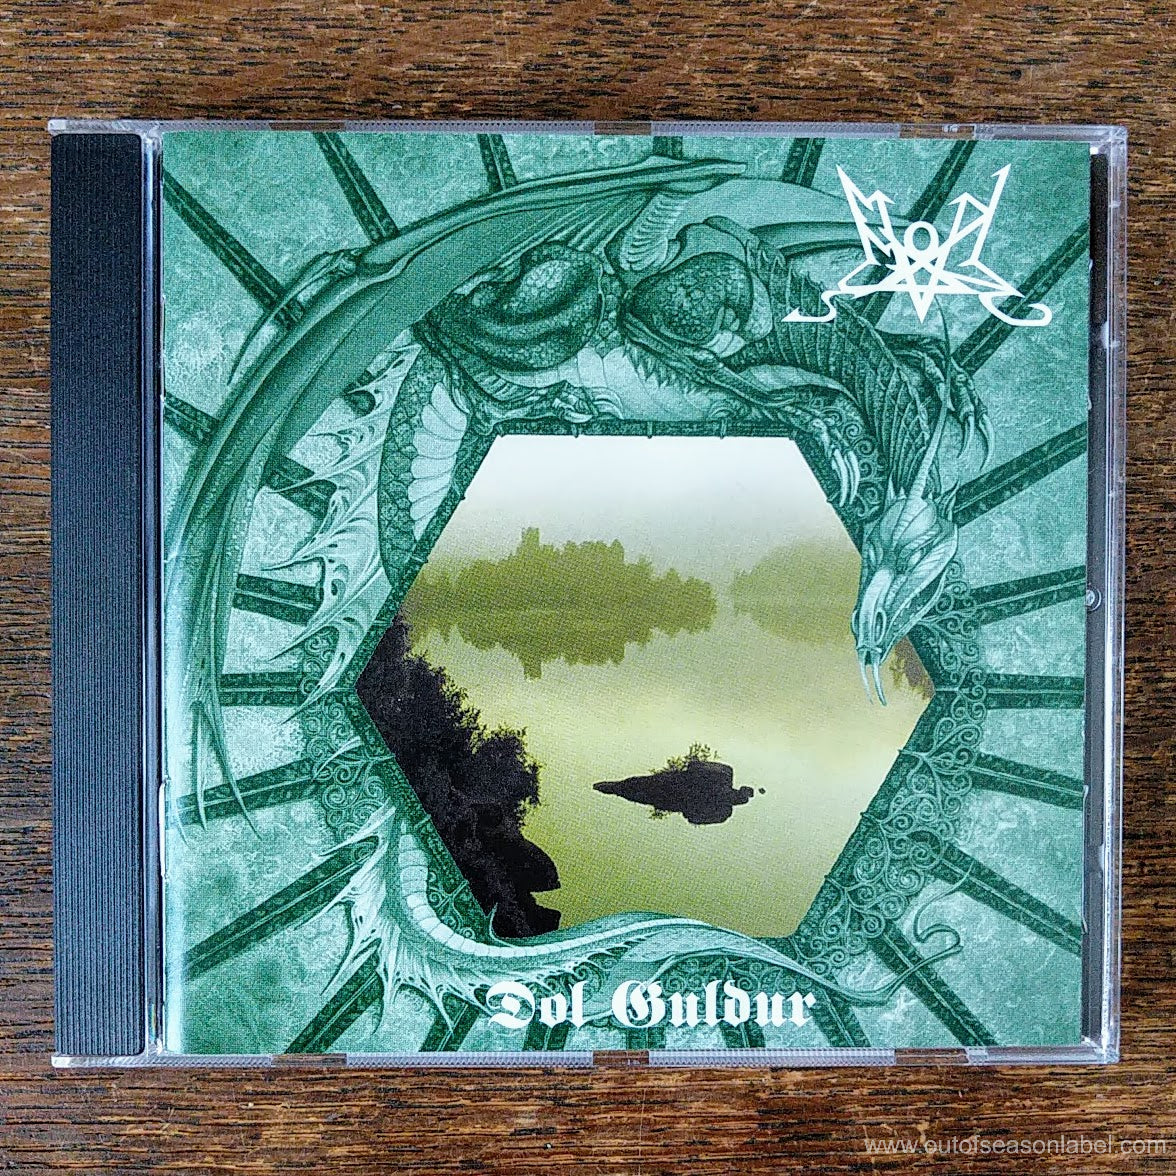 [SOLD OUT] SUMMONING "Dol Guldur" CD